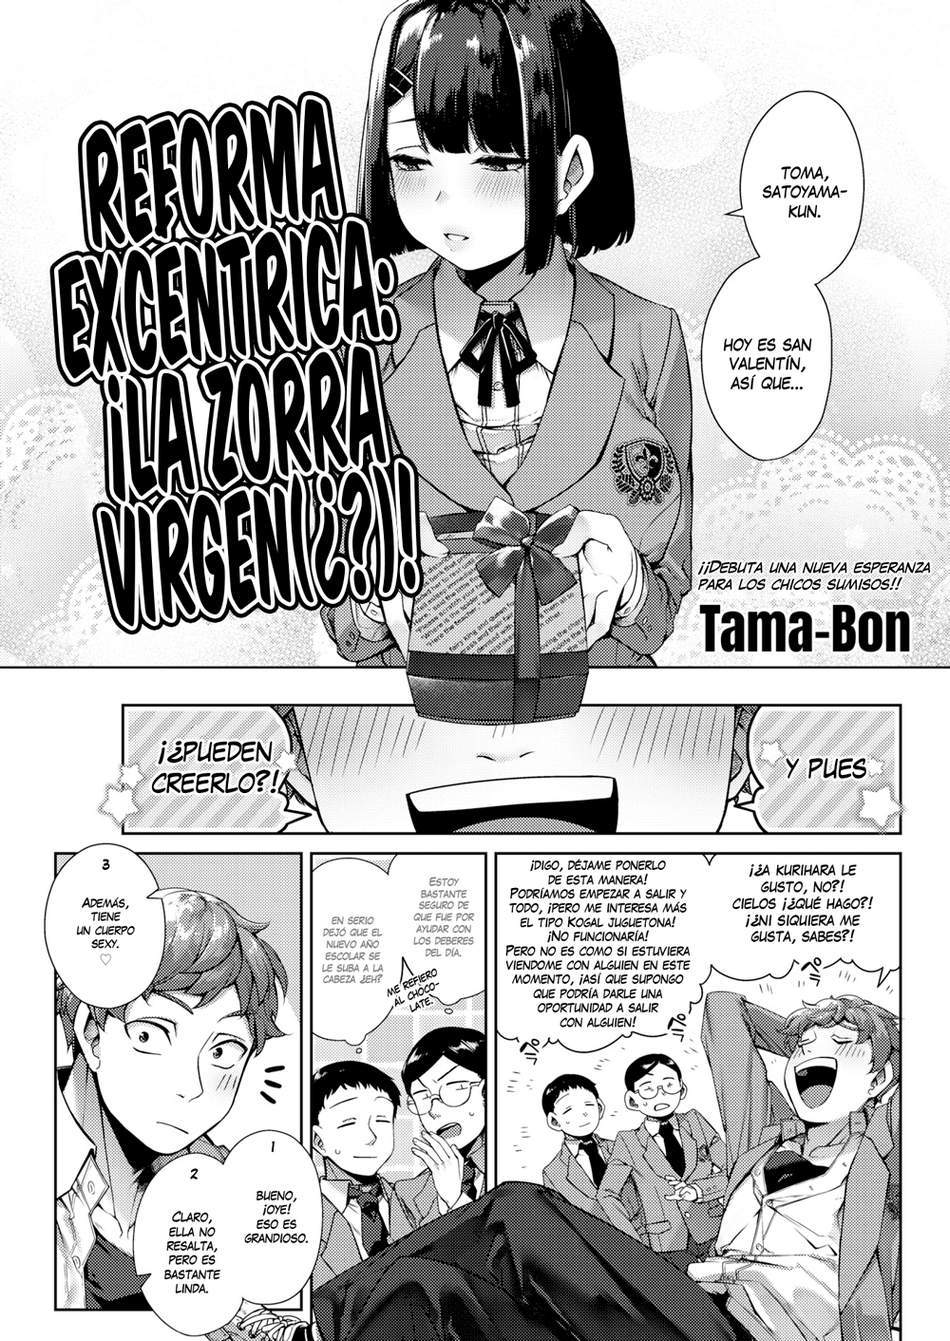 Reforma Excentrica – ¡La zorra virgen(¿?)! - Page #1